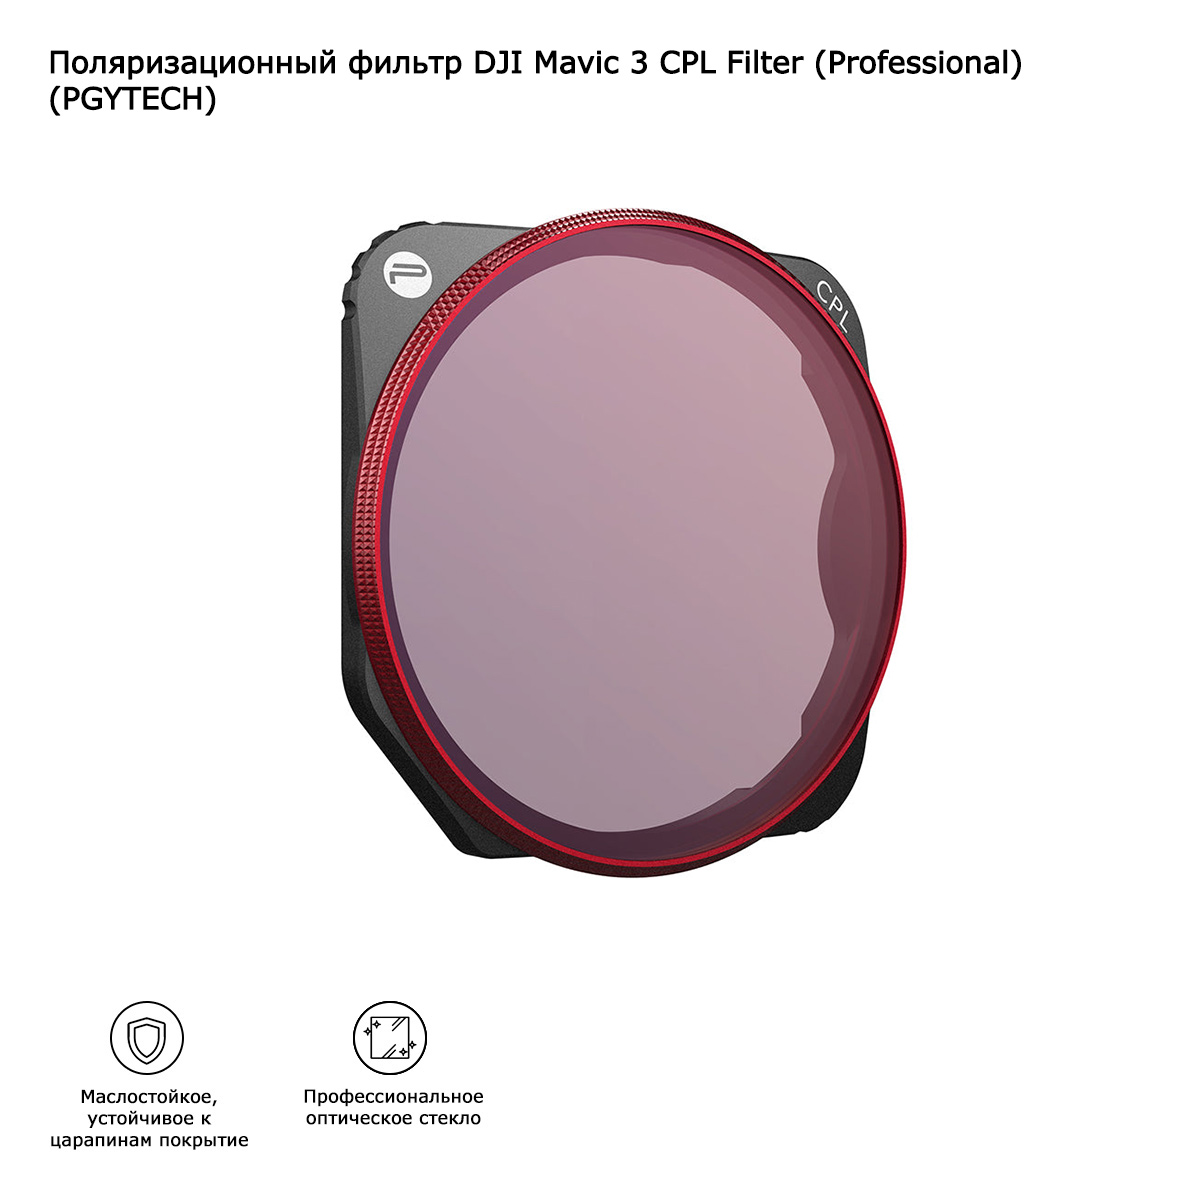 Поляризационный фильтр DJI Mavic 3 CPL Filter (Professional) (PGYTECH) (P-26A-035)